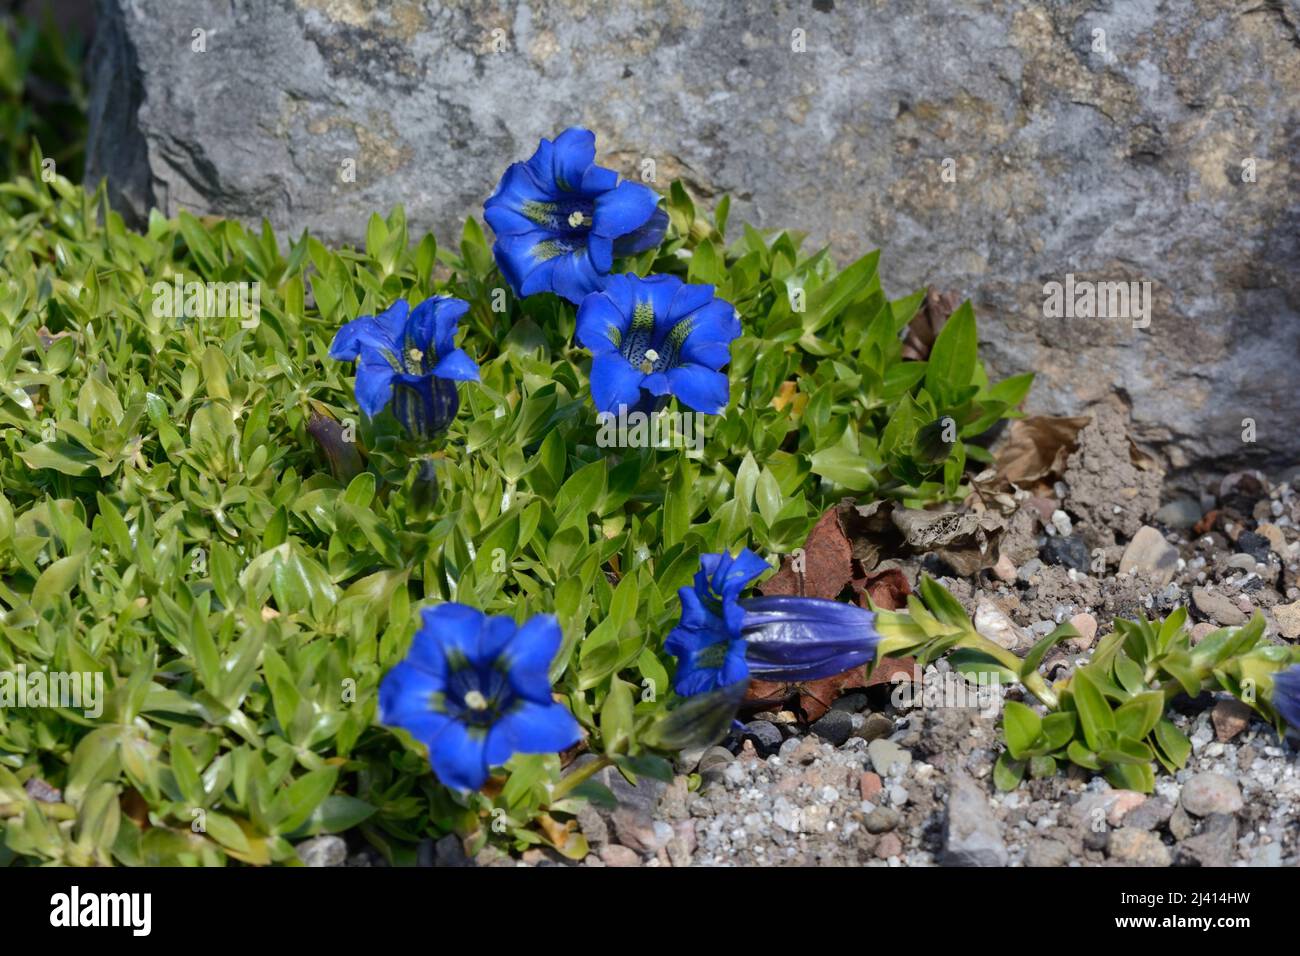 Trumpet shaped bright blue flowers of Gentiana ligustica Ligurian gentian flowers growing in a rockery garden Stock Photo